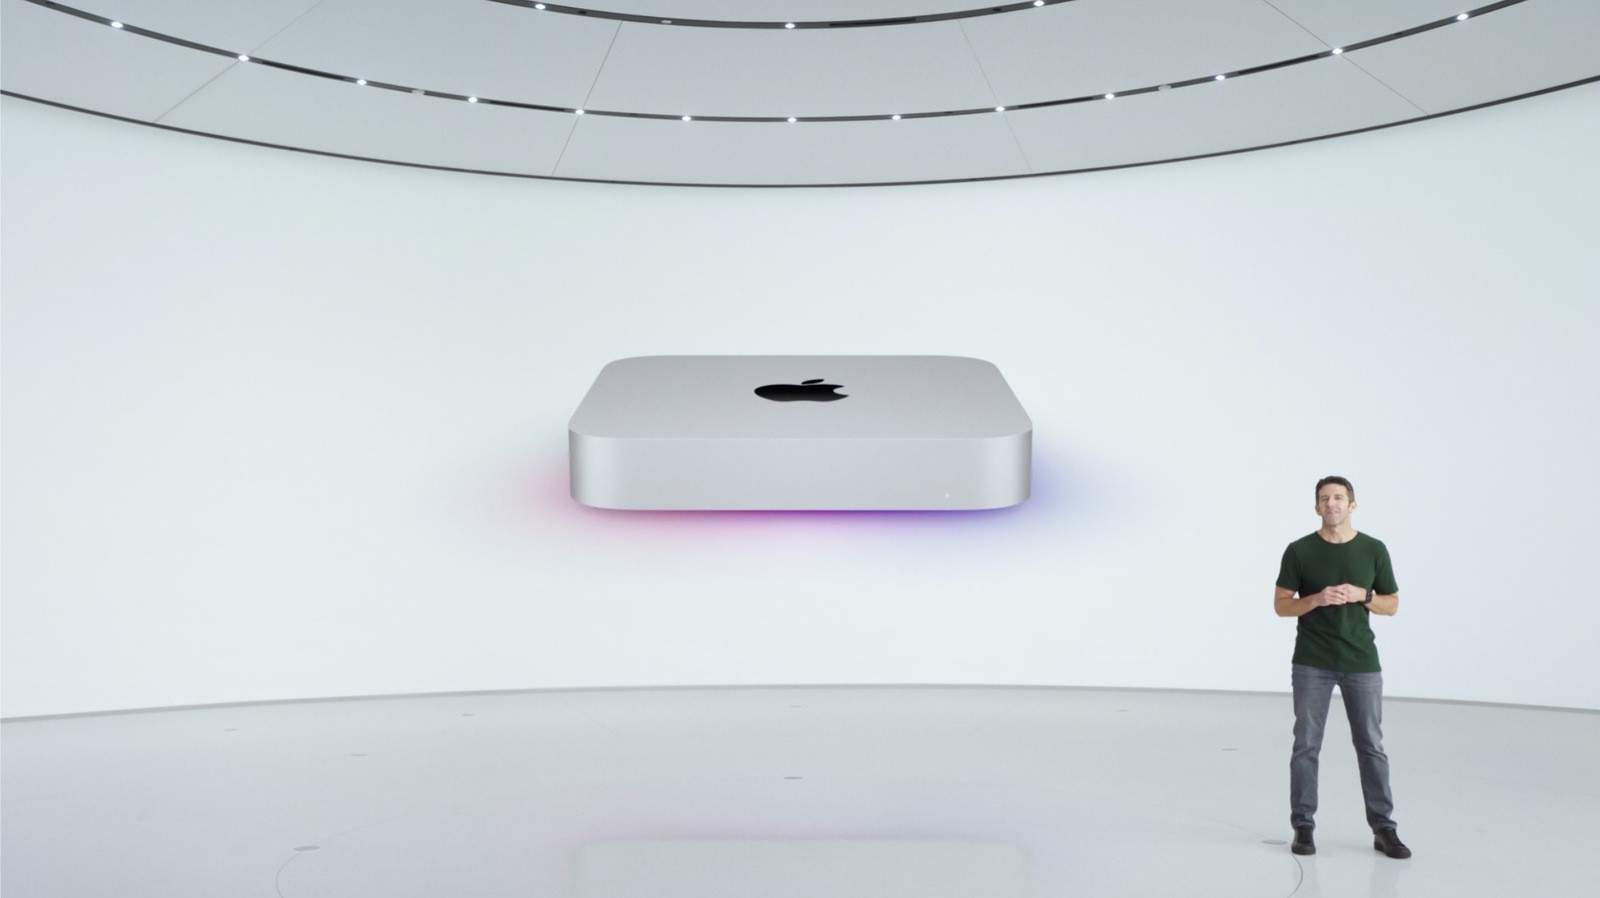 mac mini m1 apple silicon